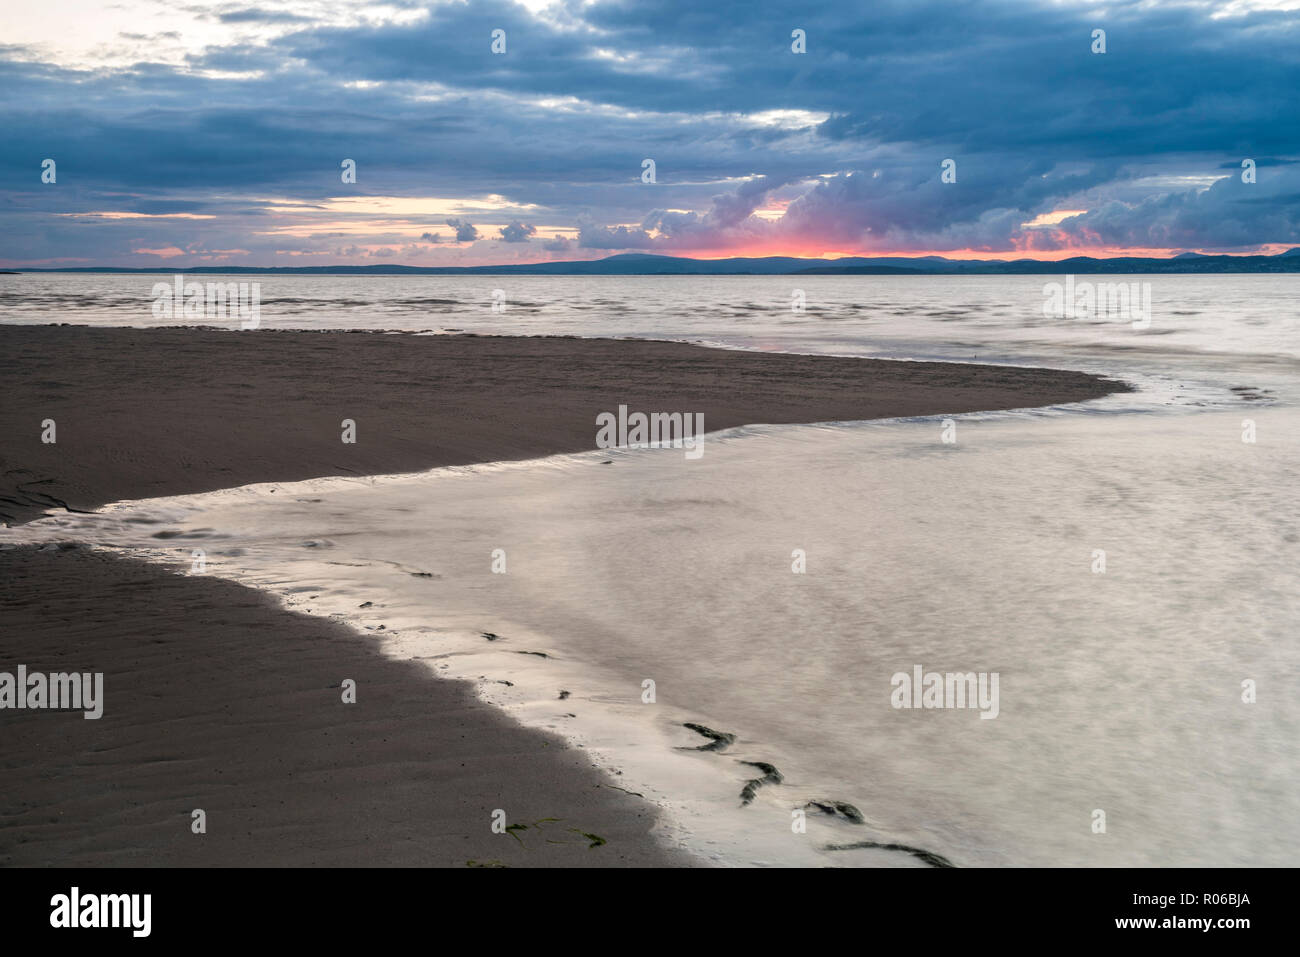 La baie de Morecambe au coucher du soleil, Lancashire, Angleterre, Royaume-Uni, Europe Banque D'Images